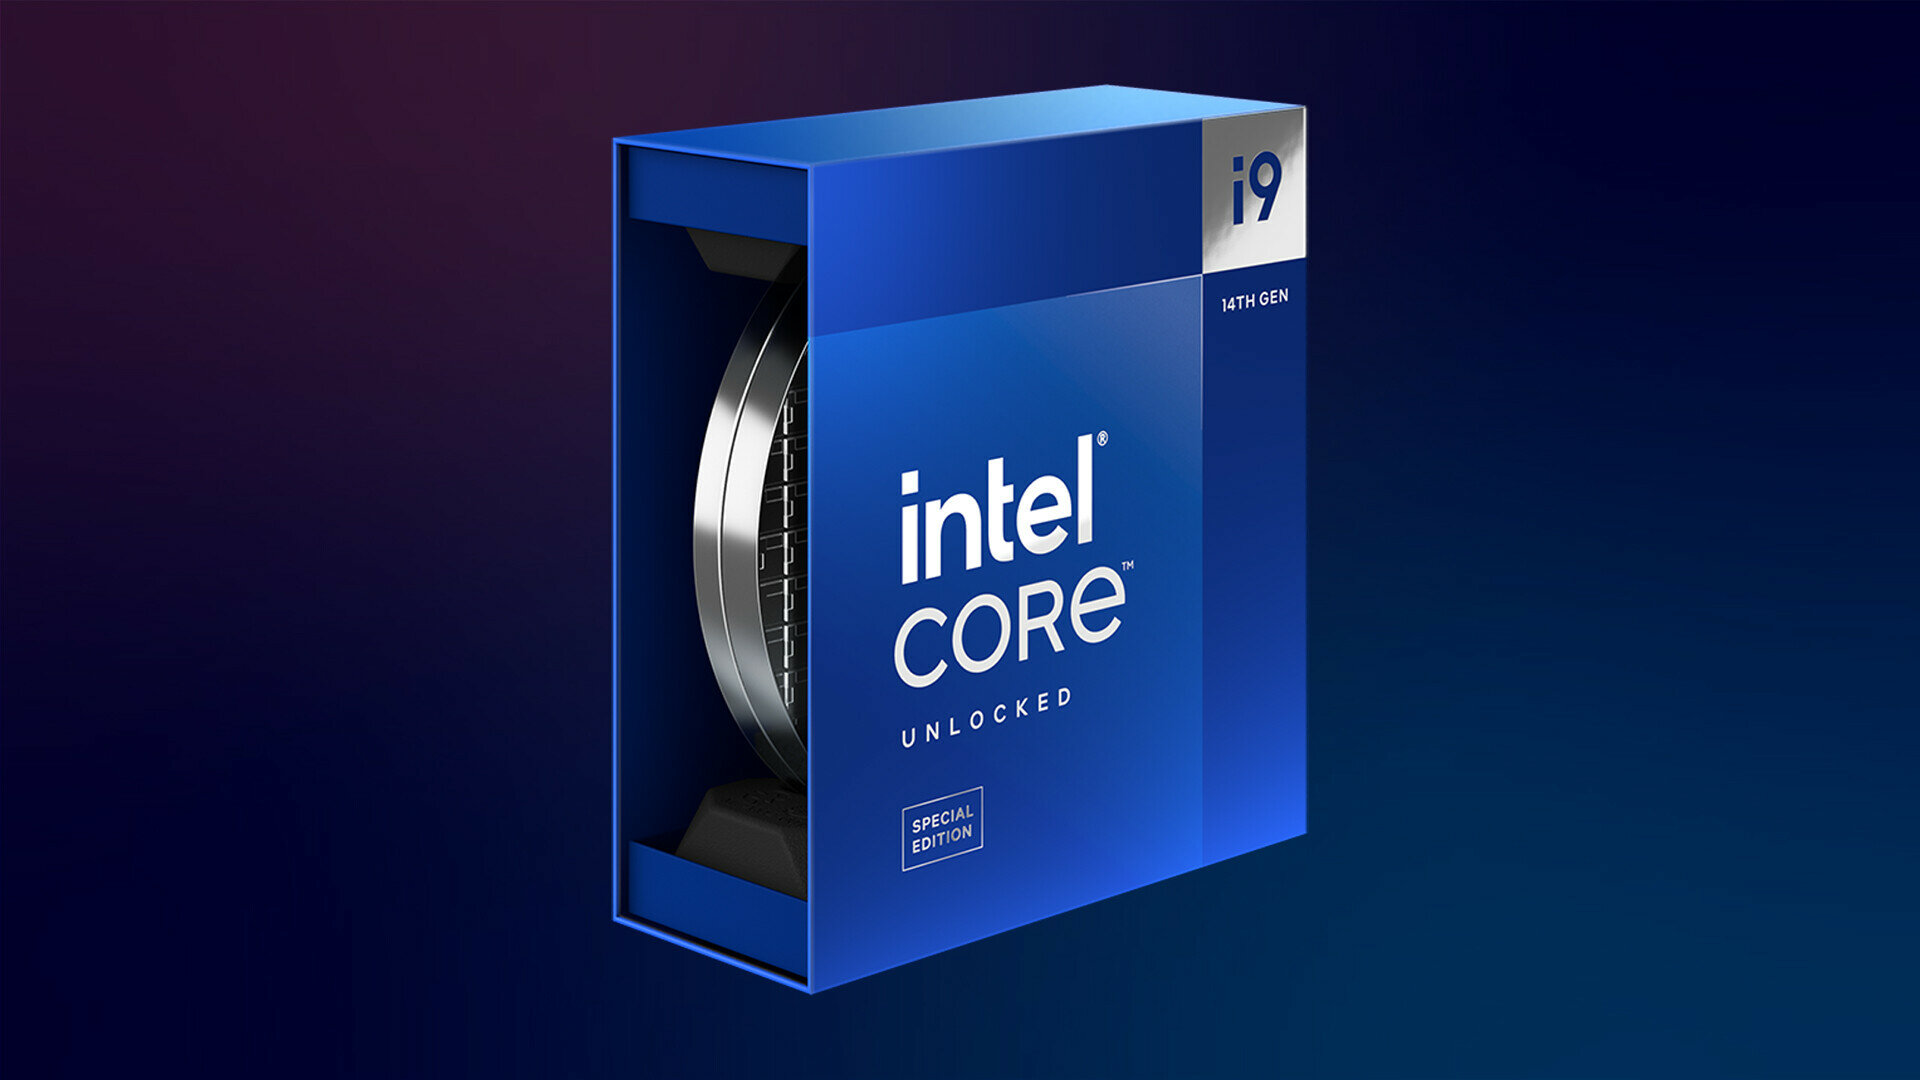 Intel официально представила процессор Core i9-14900KS c «рекордной» частотой 6,2 ГГц и поддержкой двух типов памяти